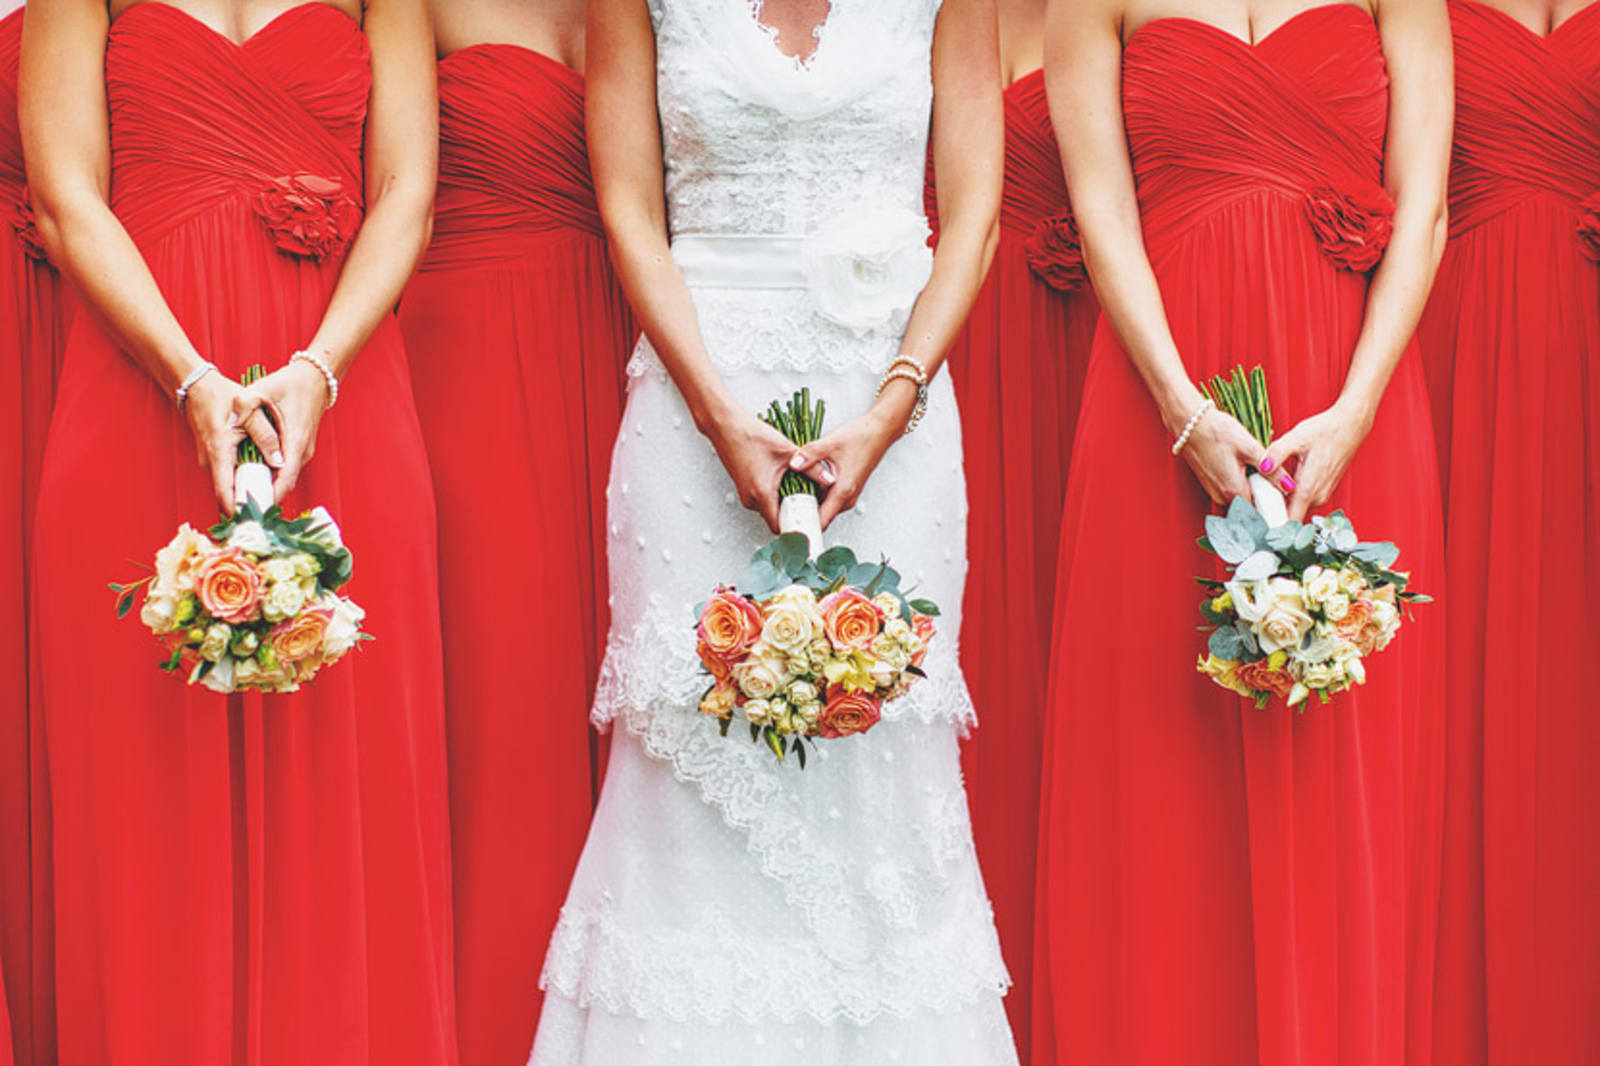 Bridebook.co.uk- bride and bridesmaids holding wedding bouquets